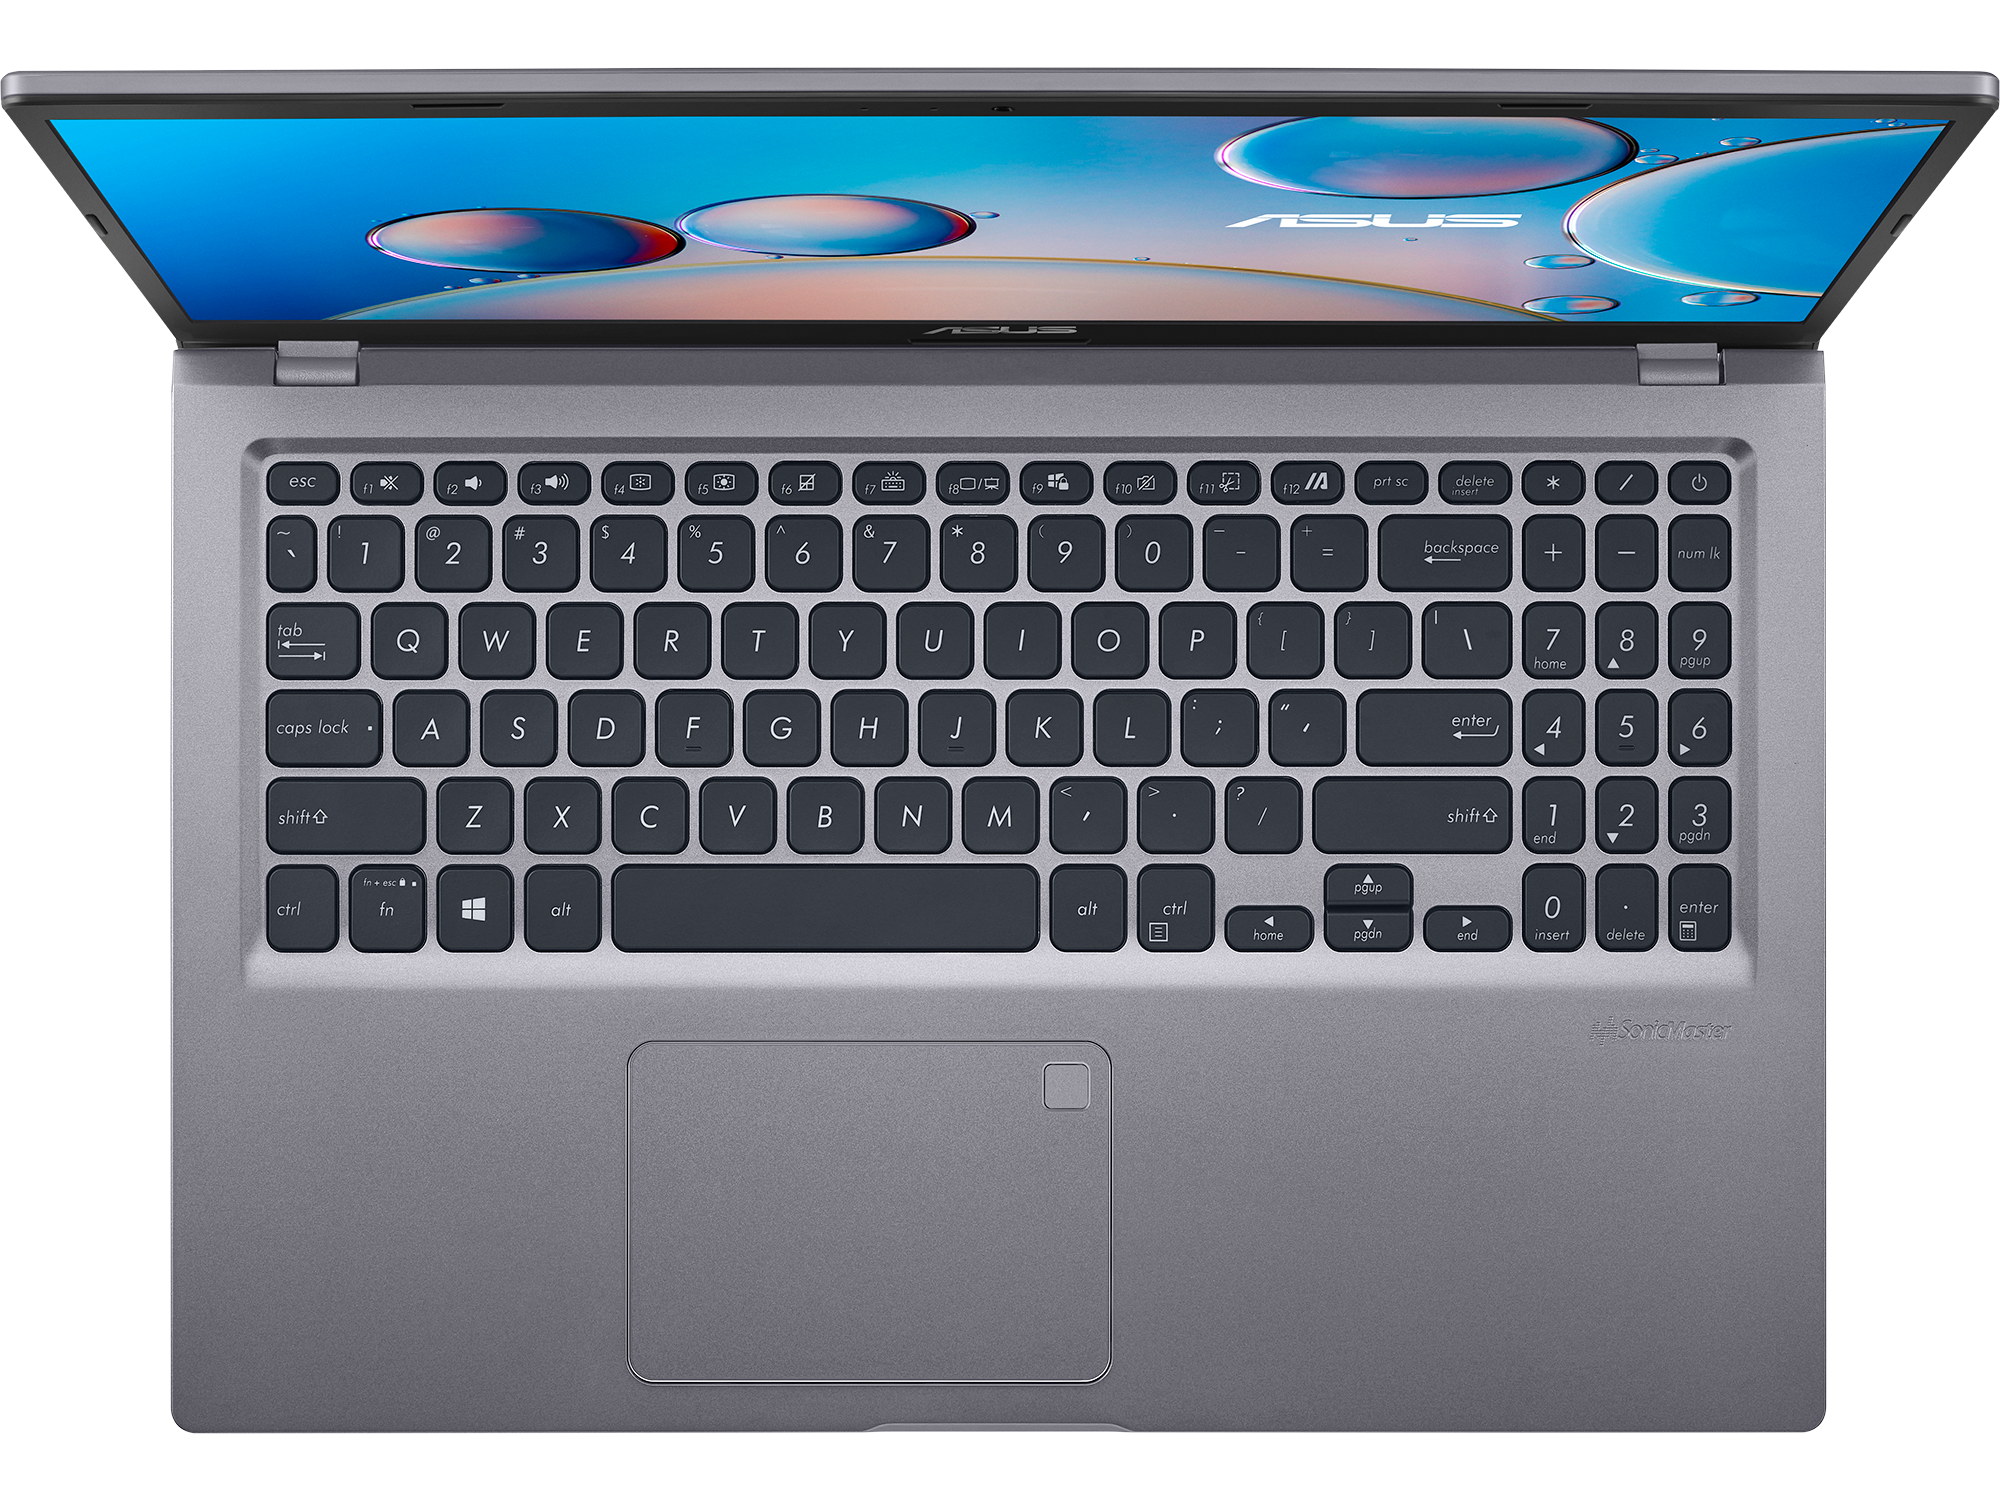 asus-x515-156-laptop